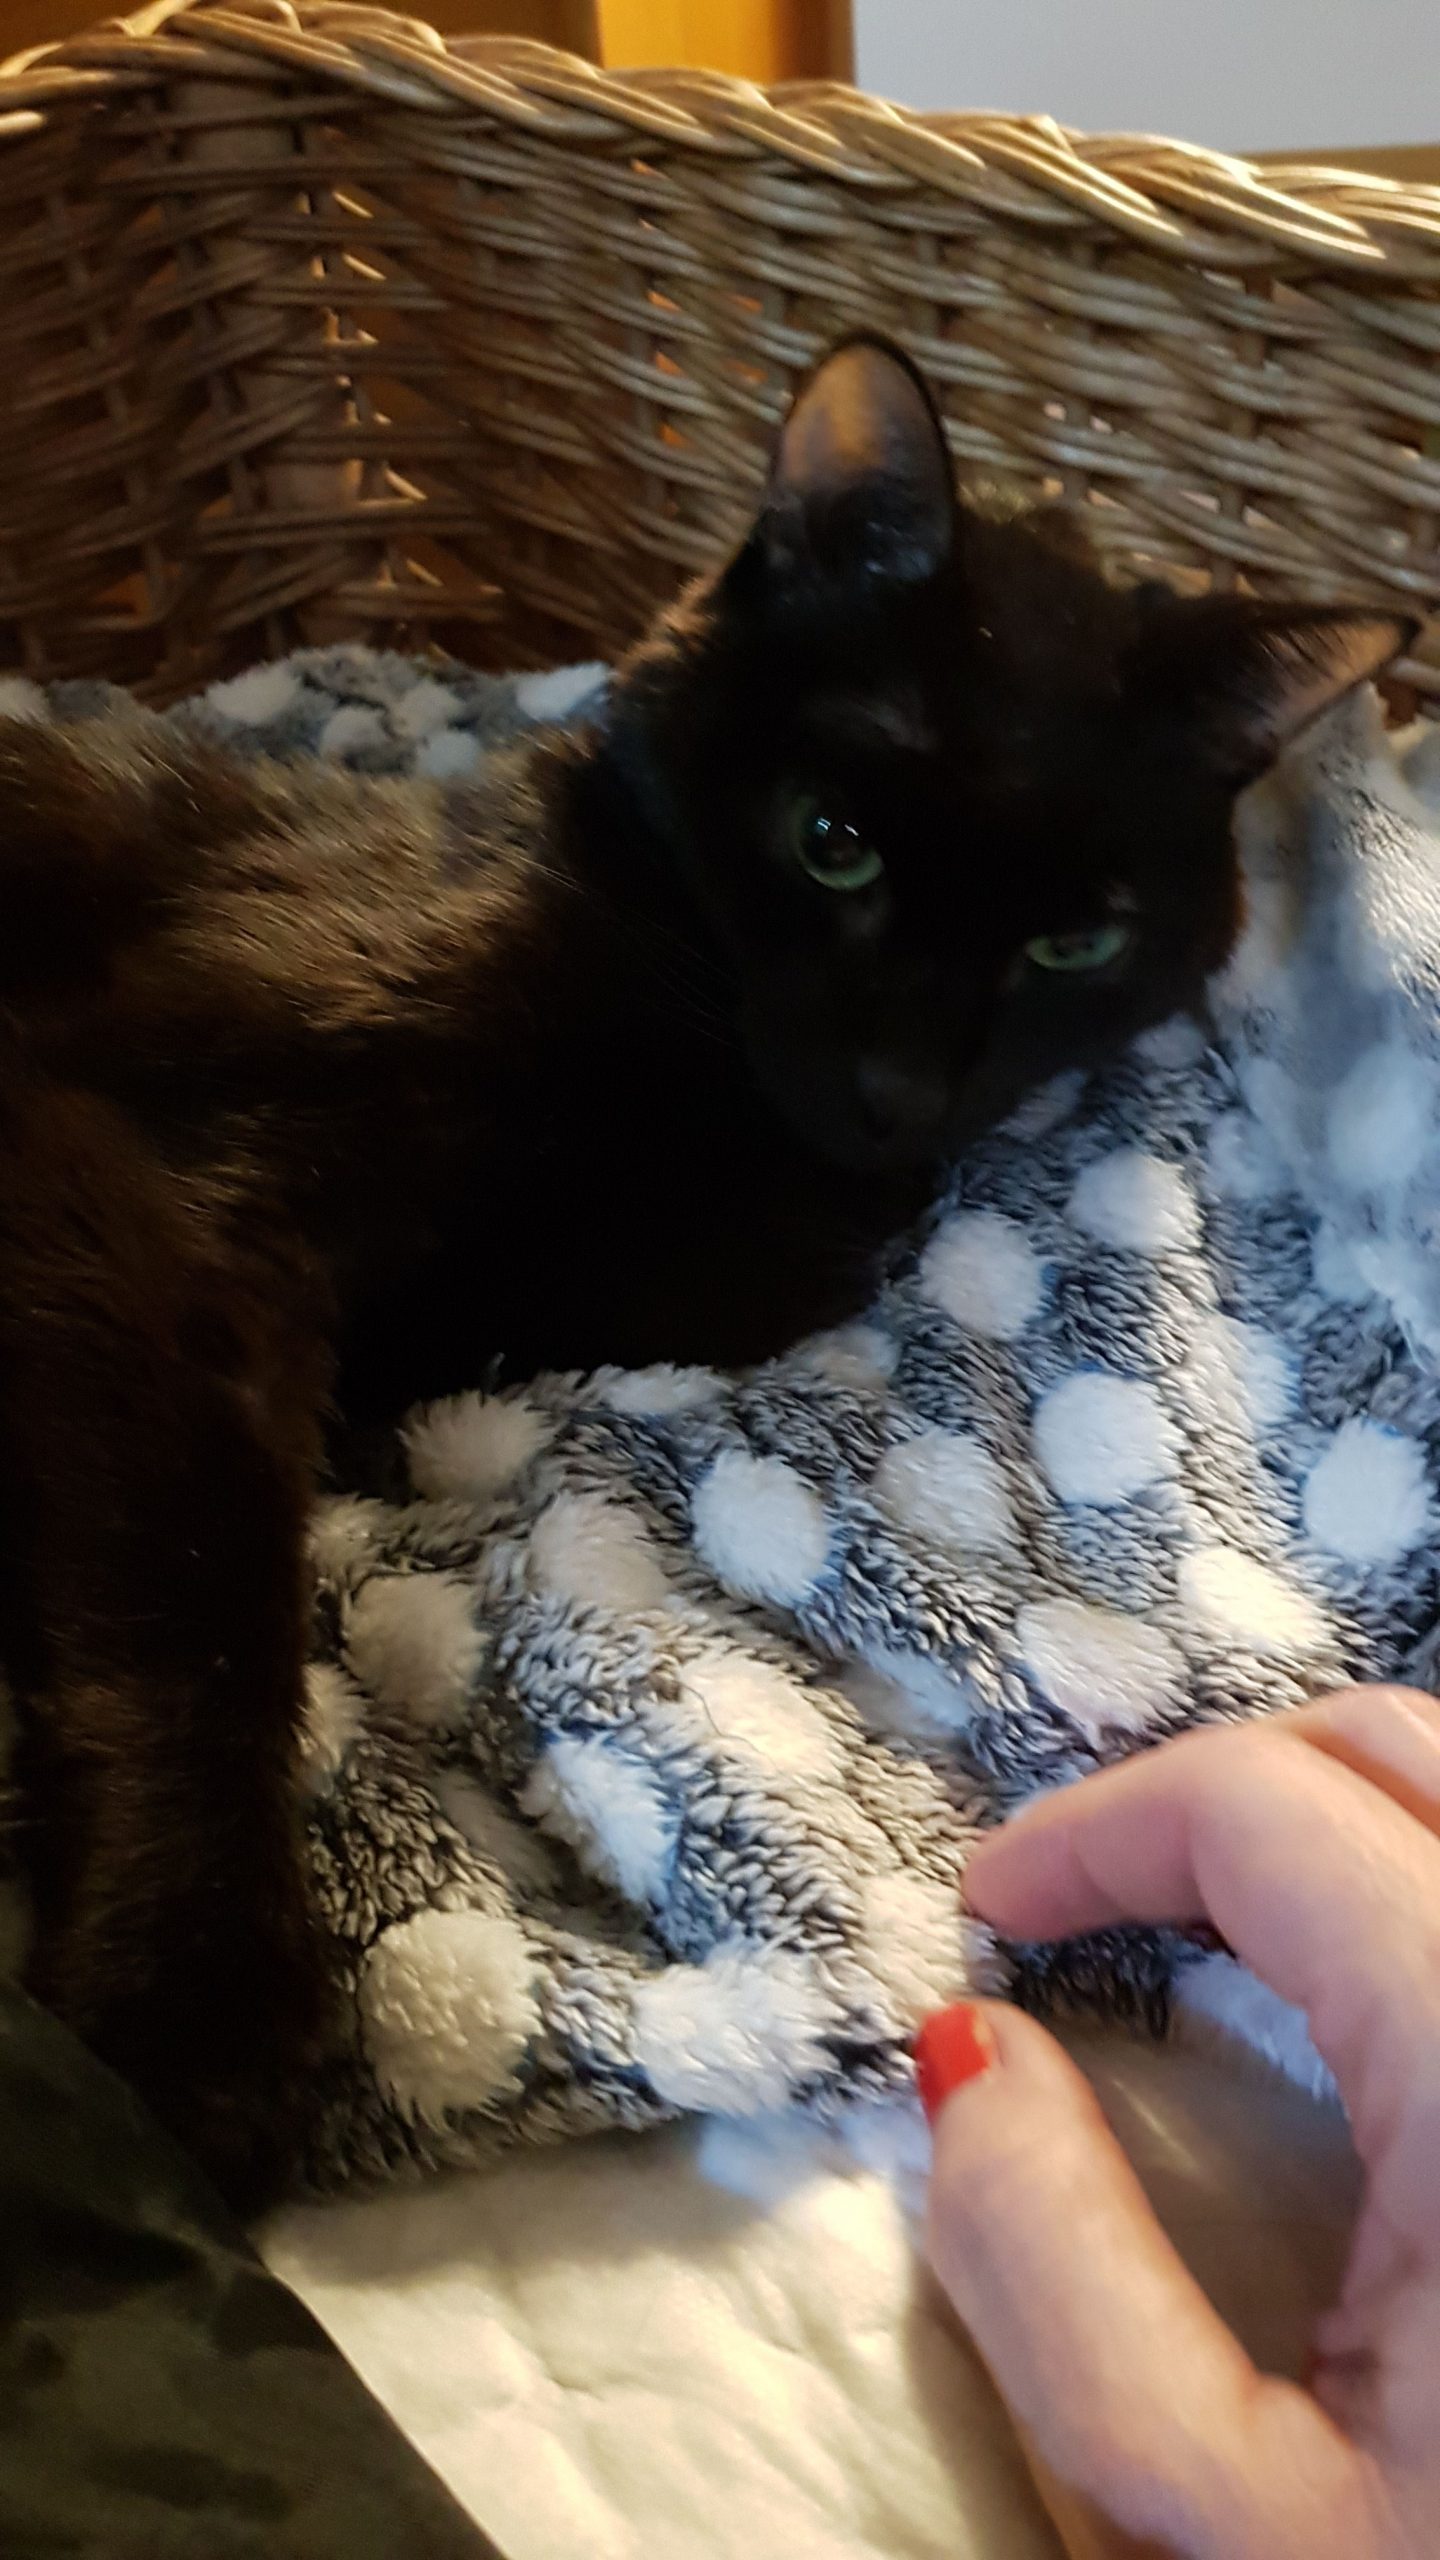 Mi gato Blaky con su mantita esponjosa